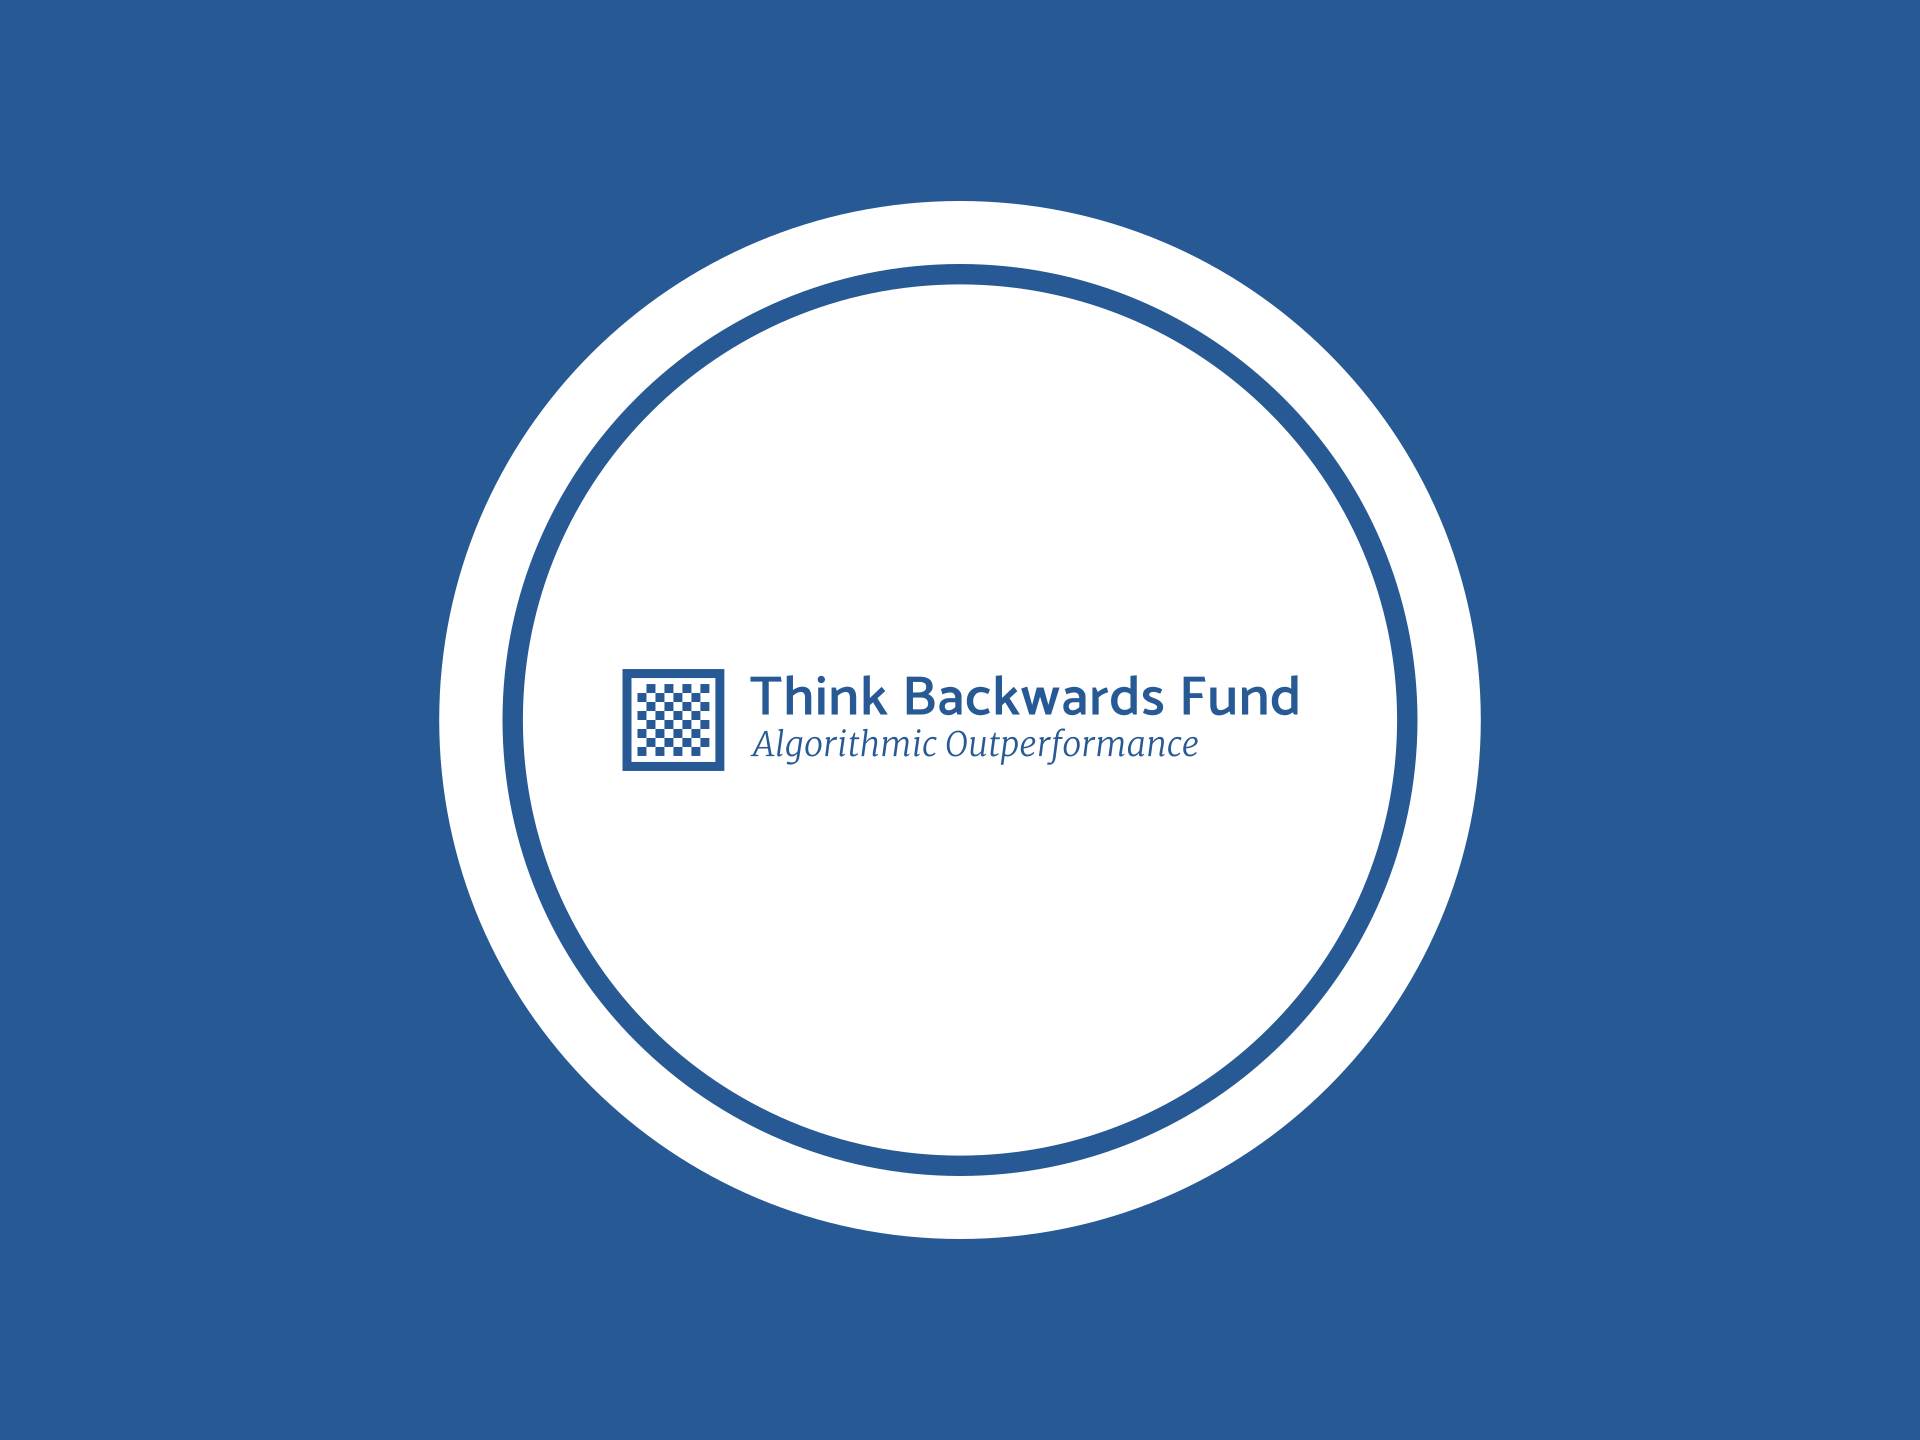 The Backwards Fund